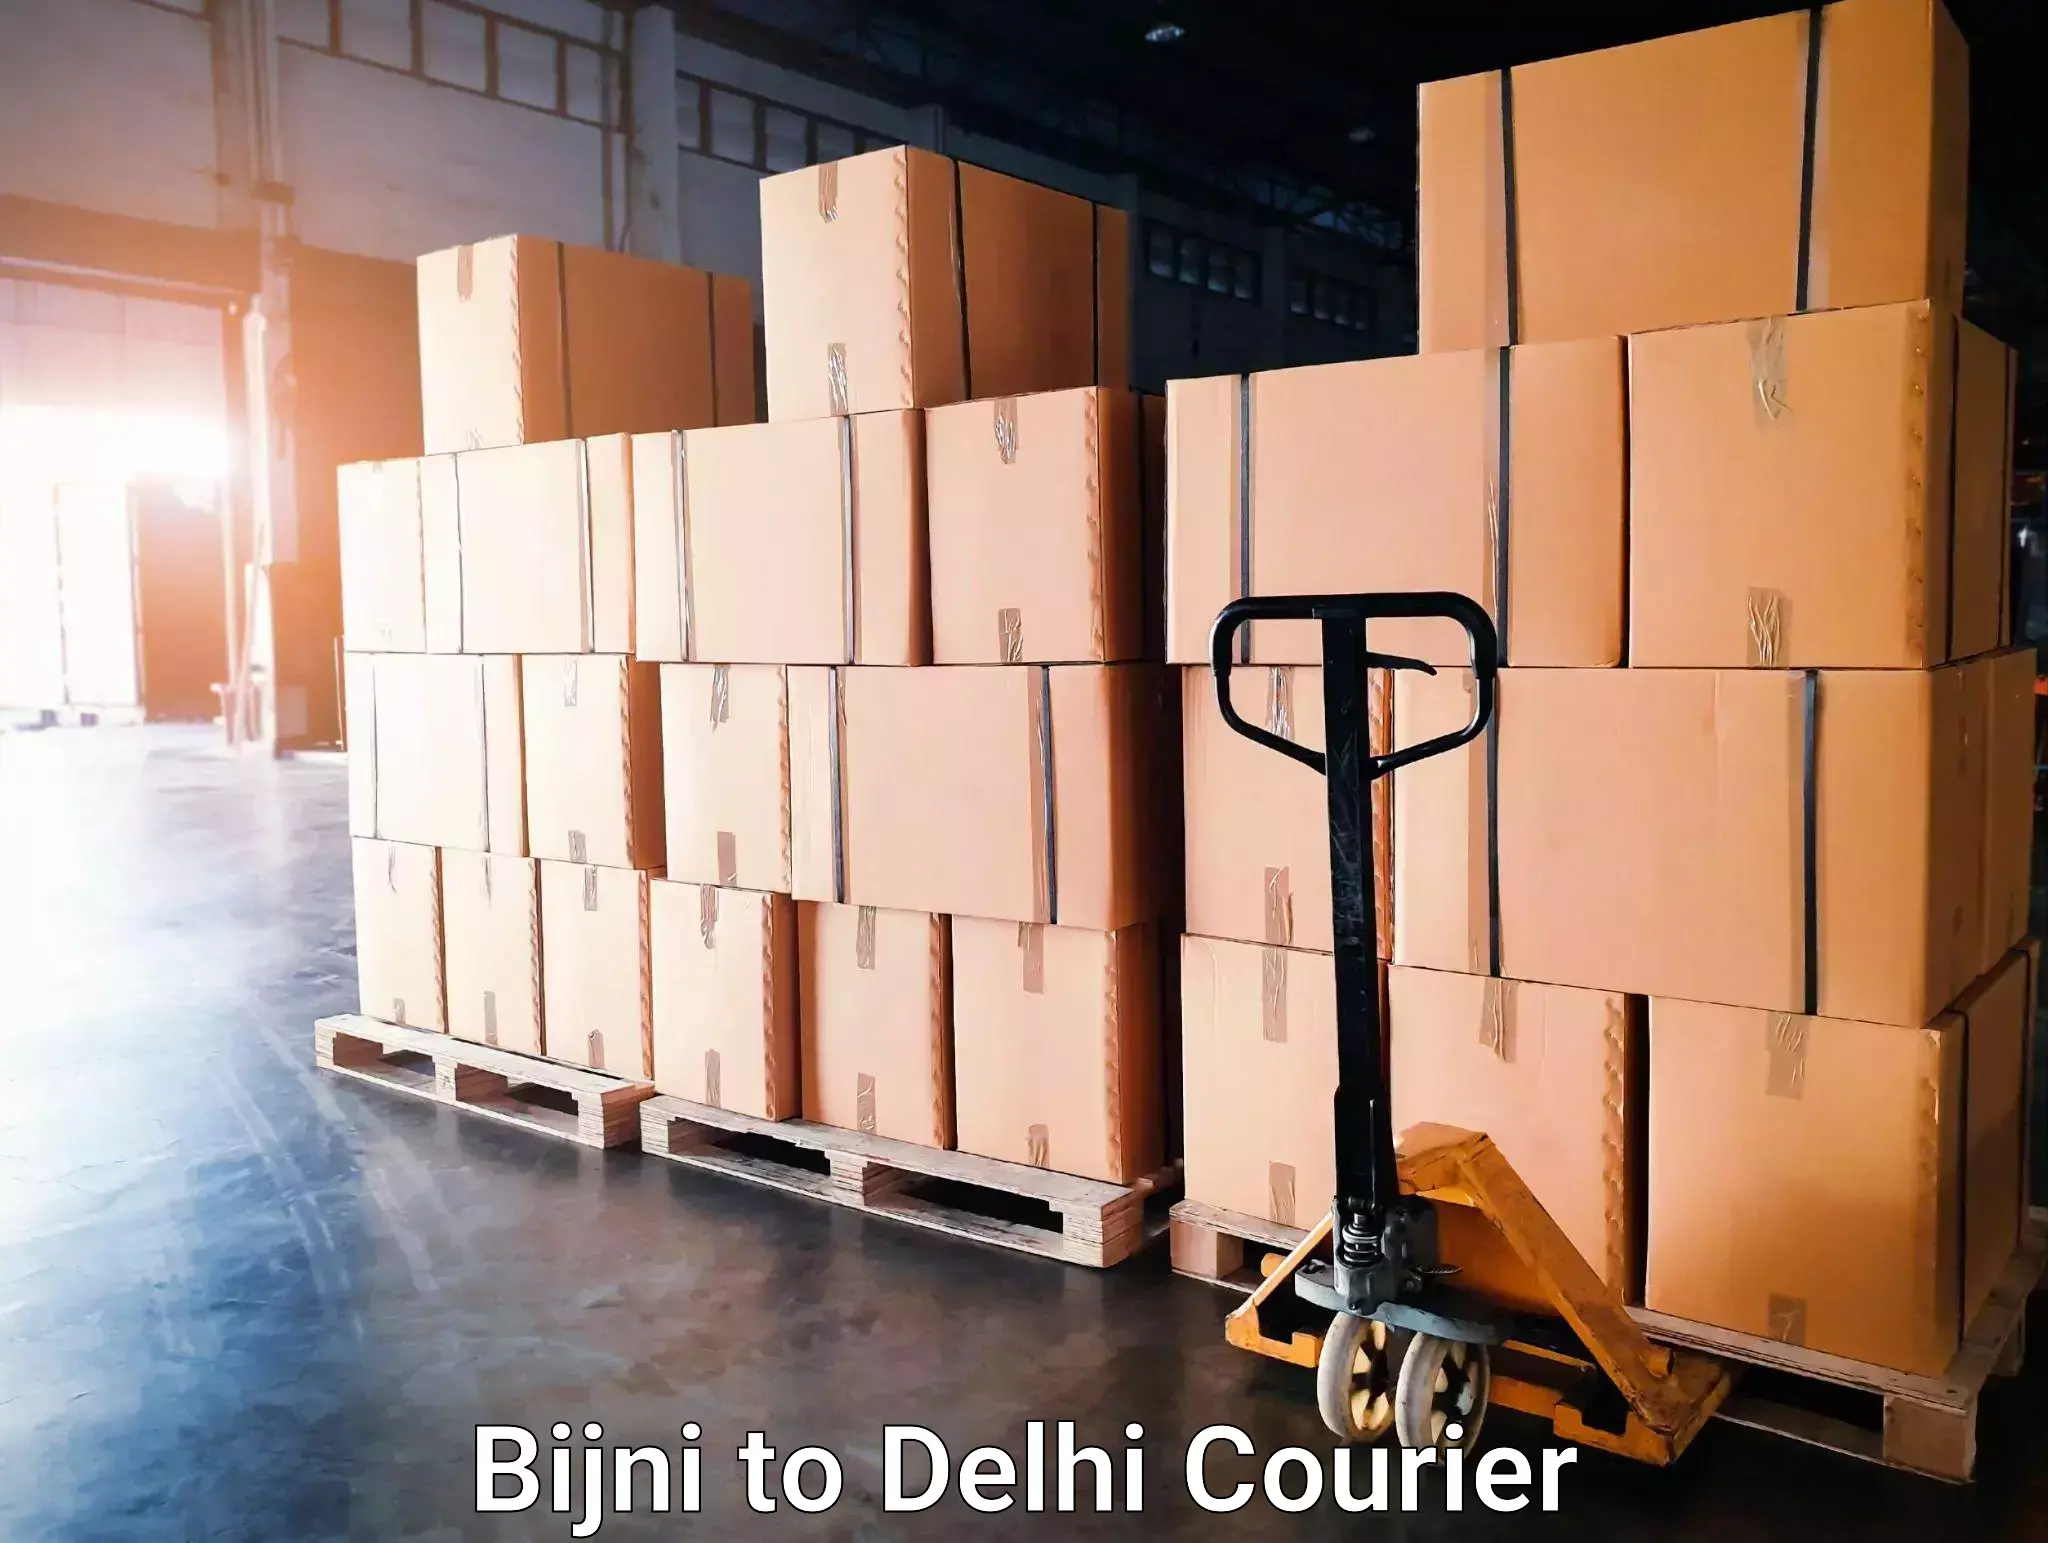 Overnight delivery services Bijni to Delhi